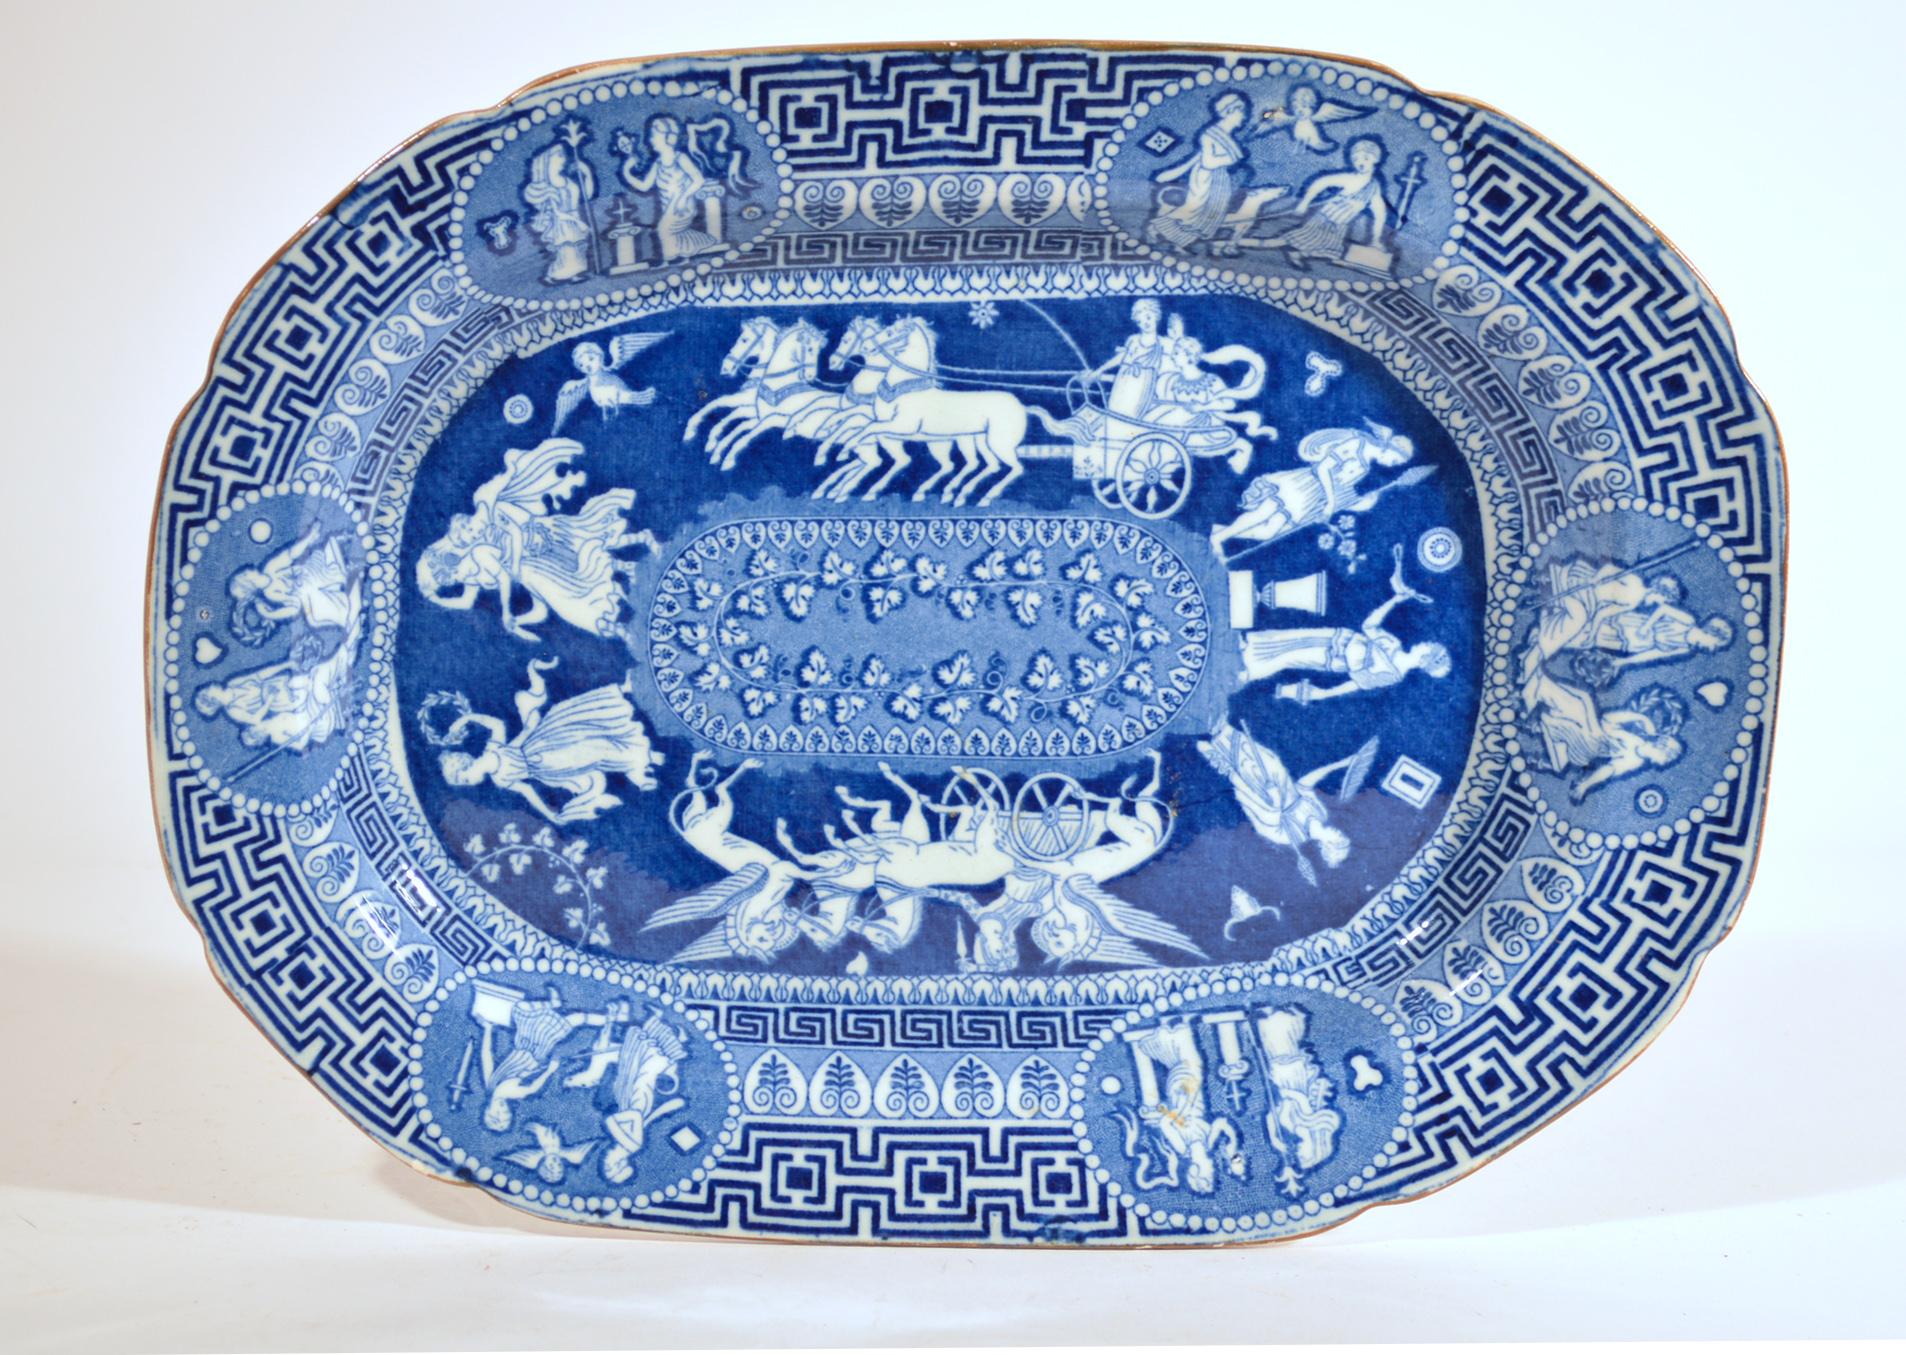 Plat Herculanum néo-classique à motif grec imprimé en bleu,
Début du 19e siècle.

Le motif central en bleu sous glaçure de la poterie d'Herculanum montre une série d'images encerclant un panneau ovale avec une vigne feuillue. Il y a deux images